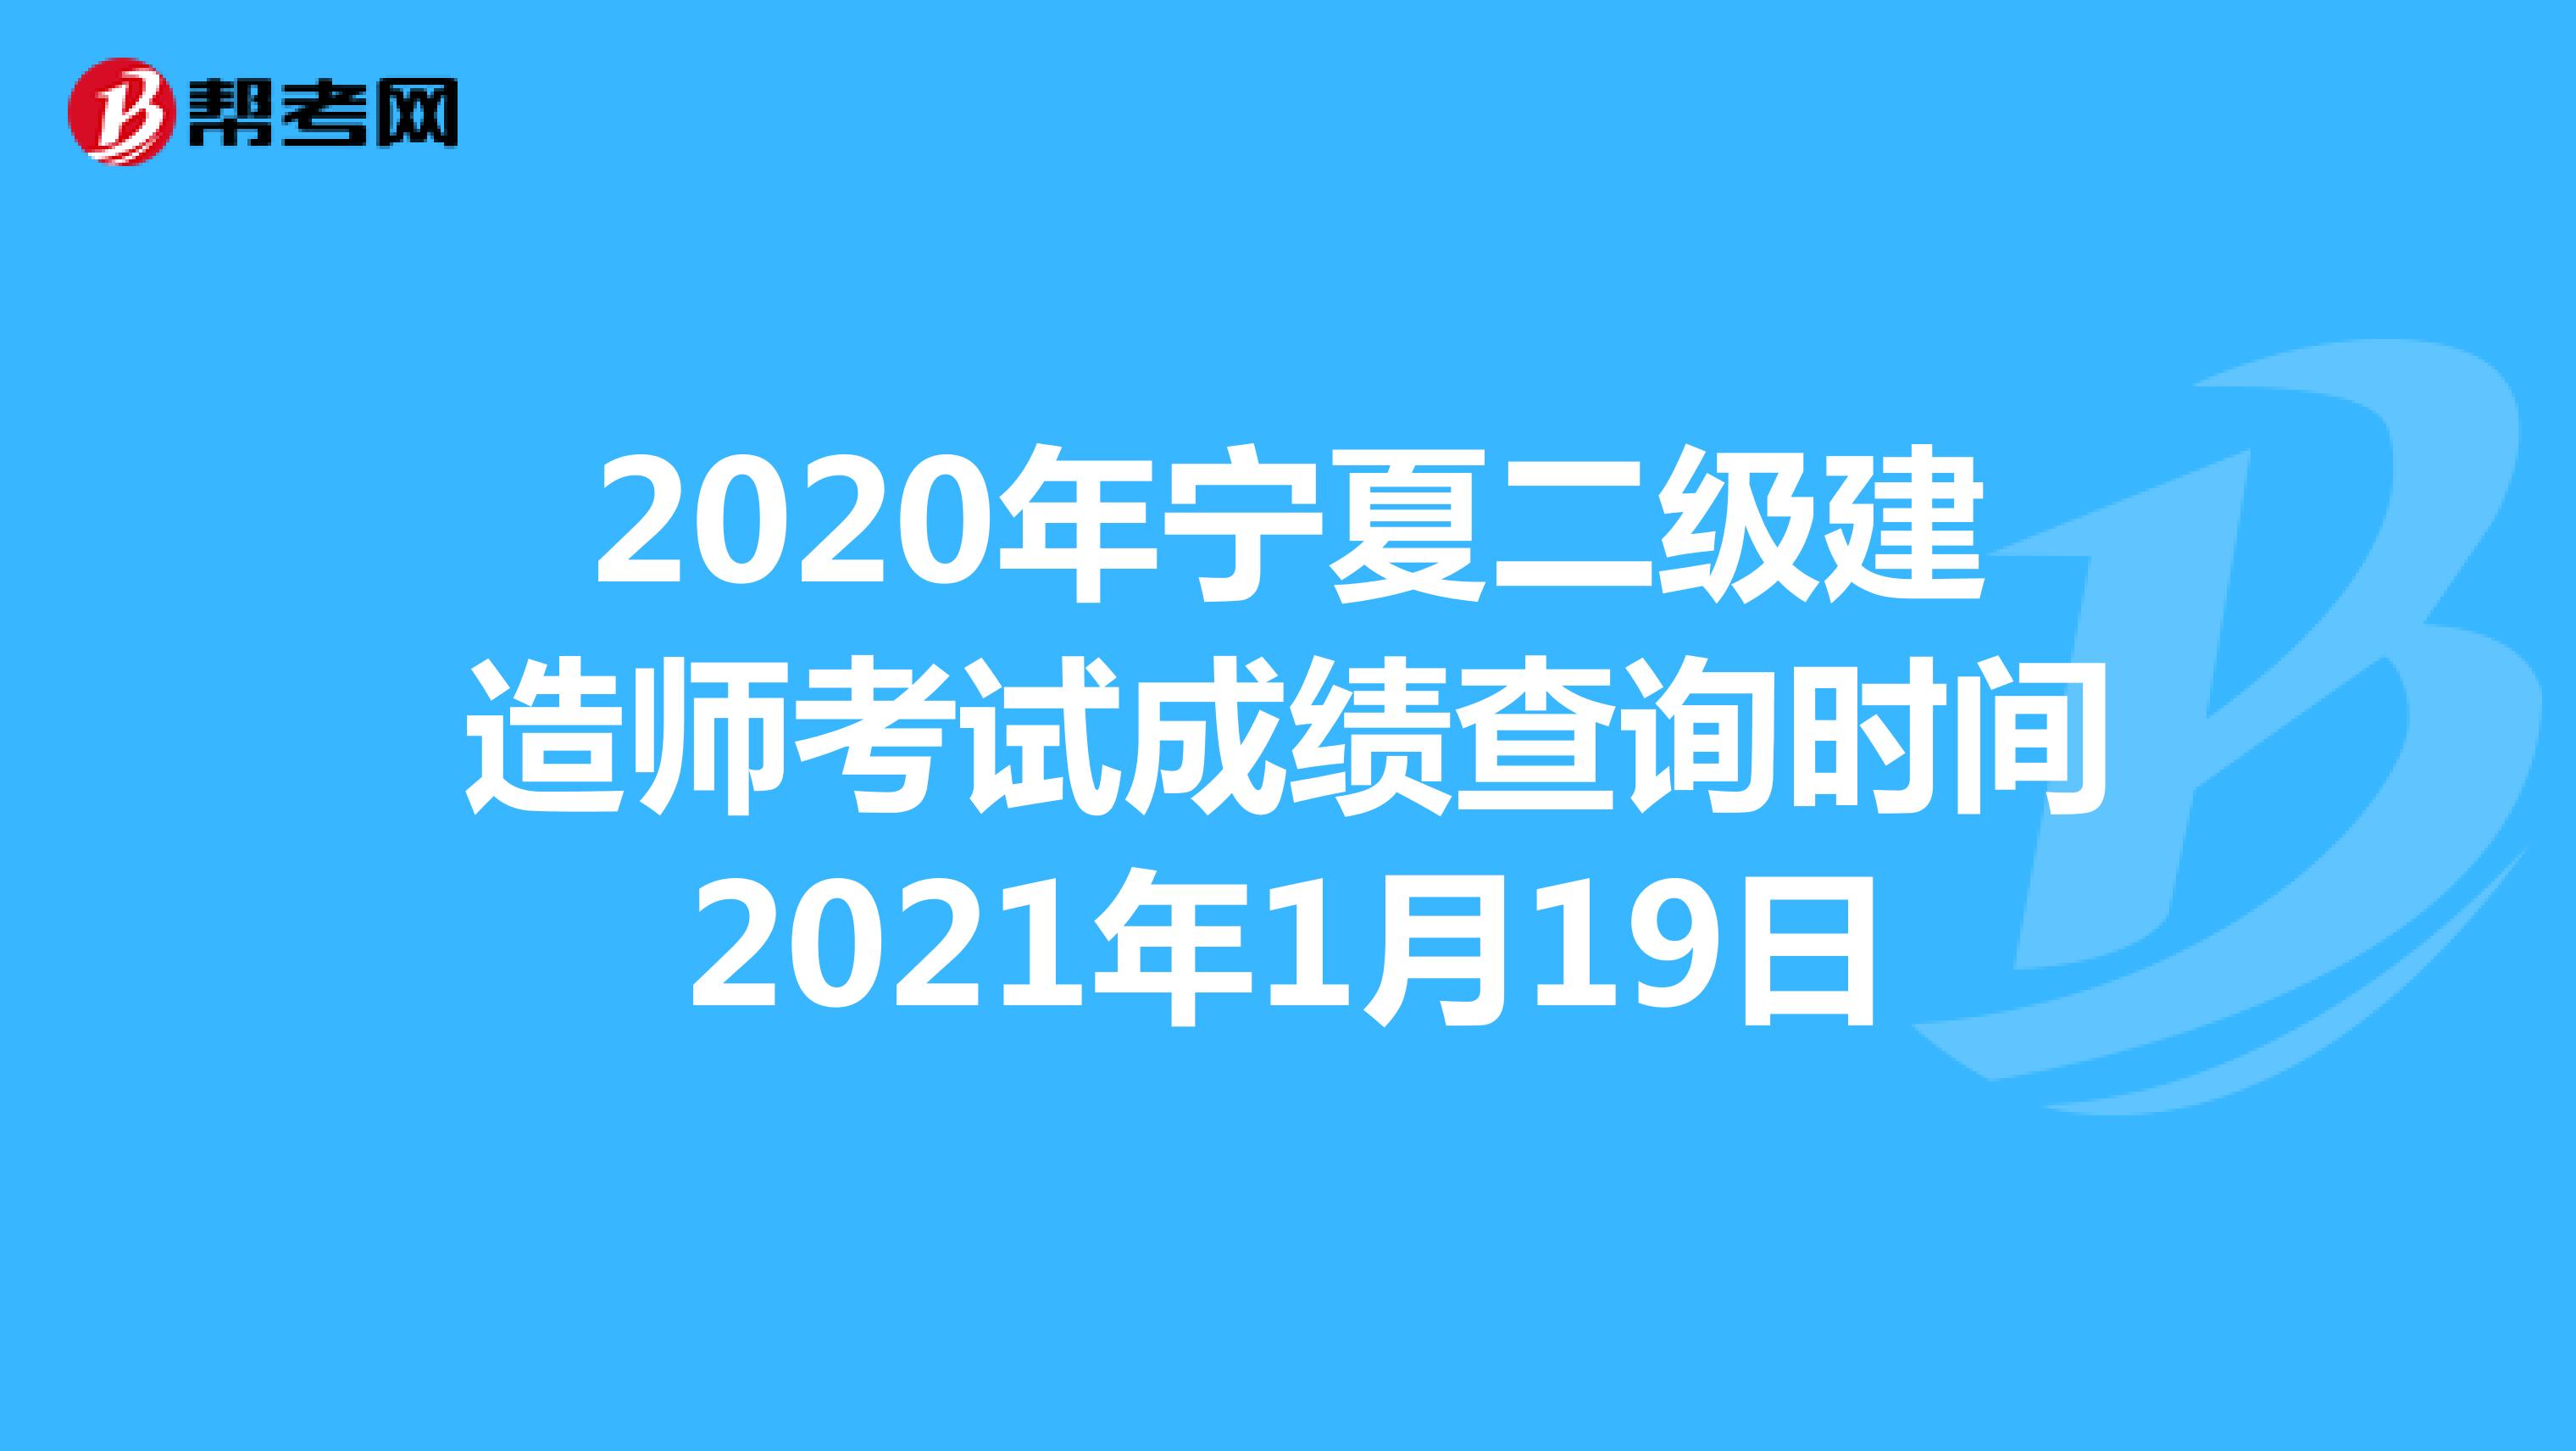 2020年宁夏二级建造师考试成绩查询时间2021年1月19日